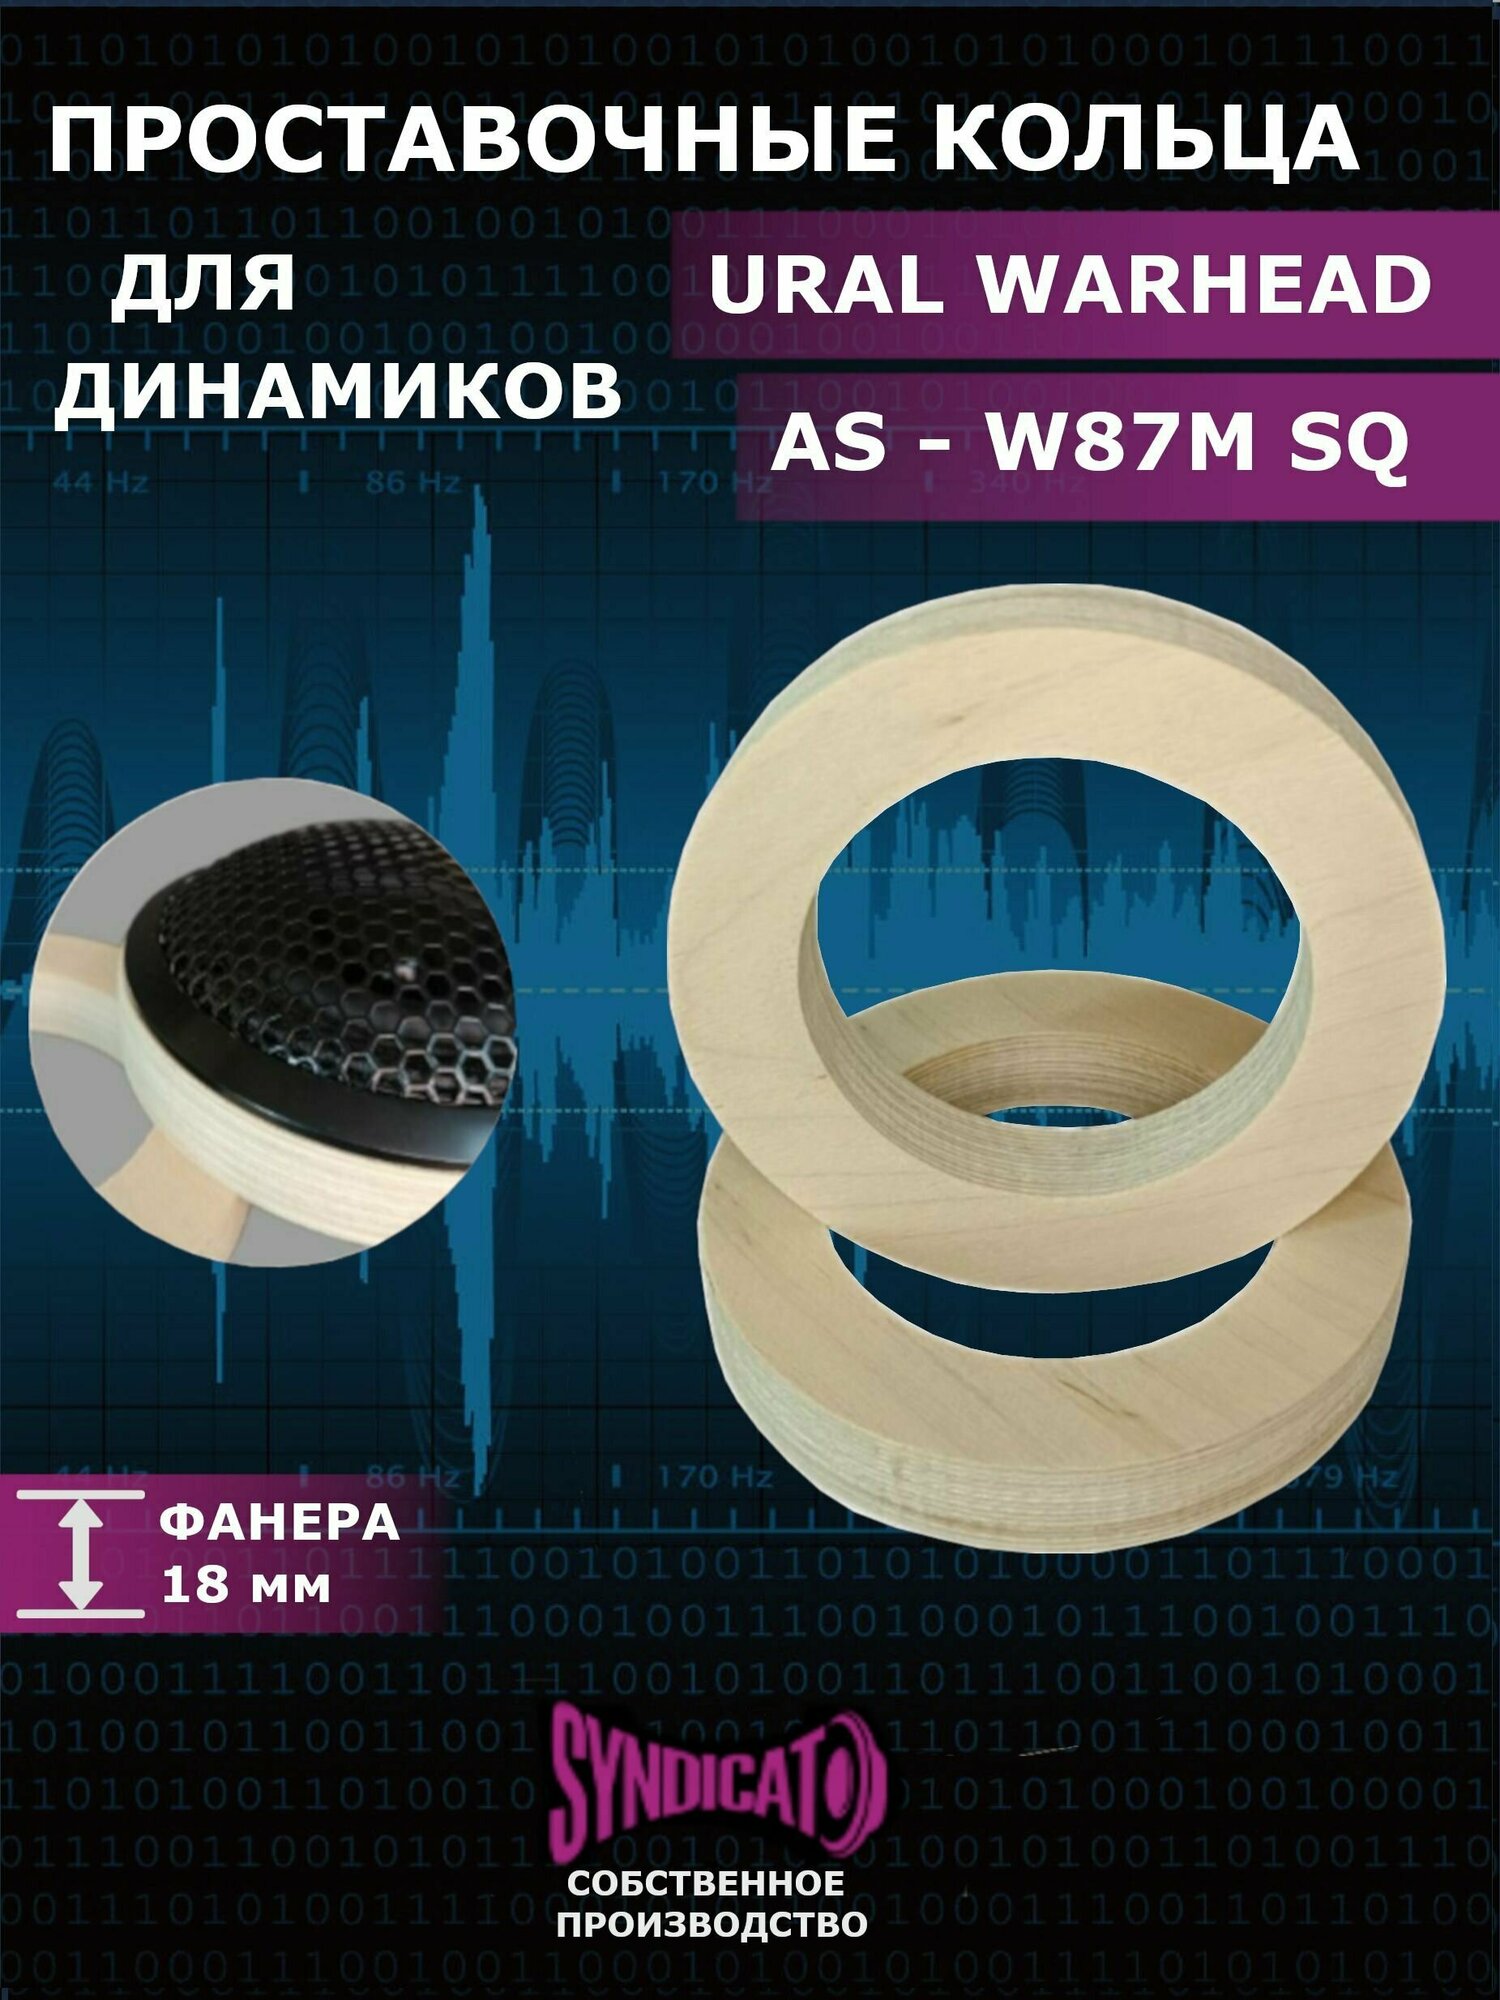 Проставочные кольца для динамиков URAL(урал) AS-W87M SQ